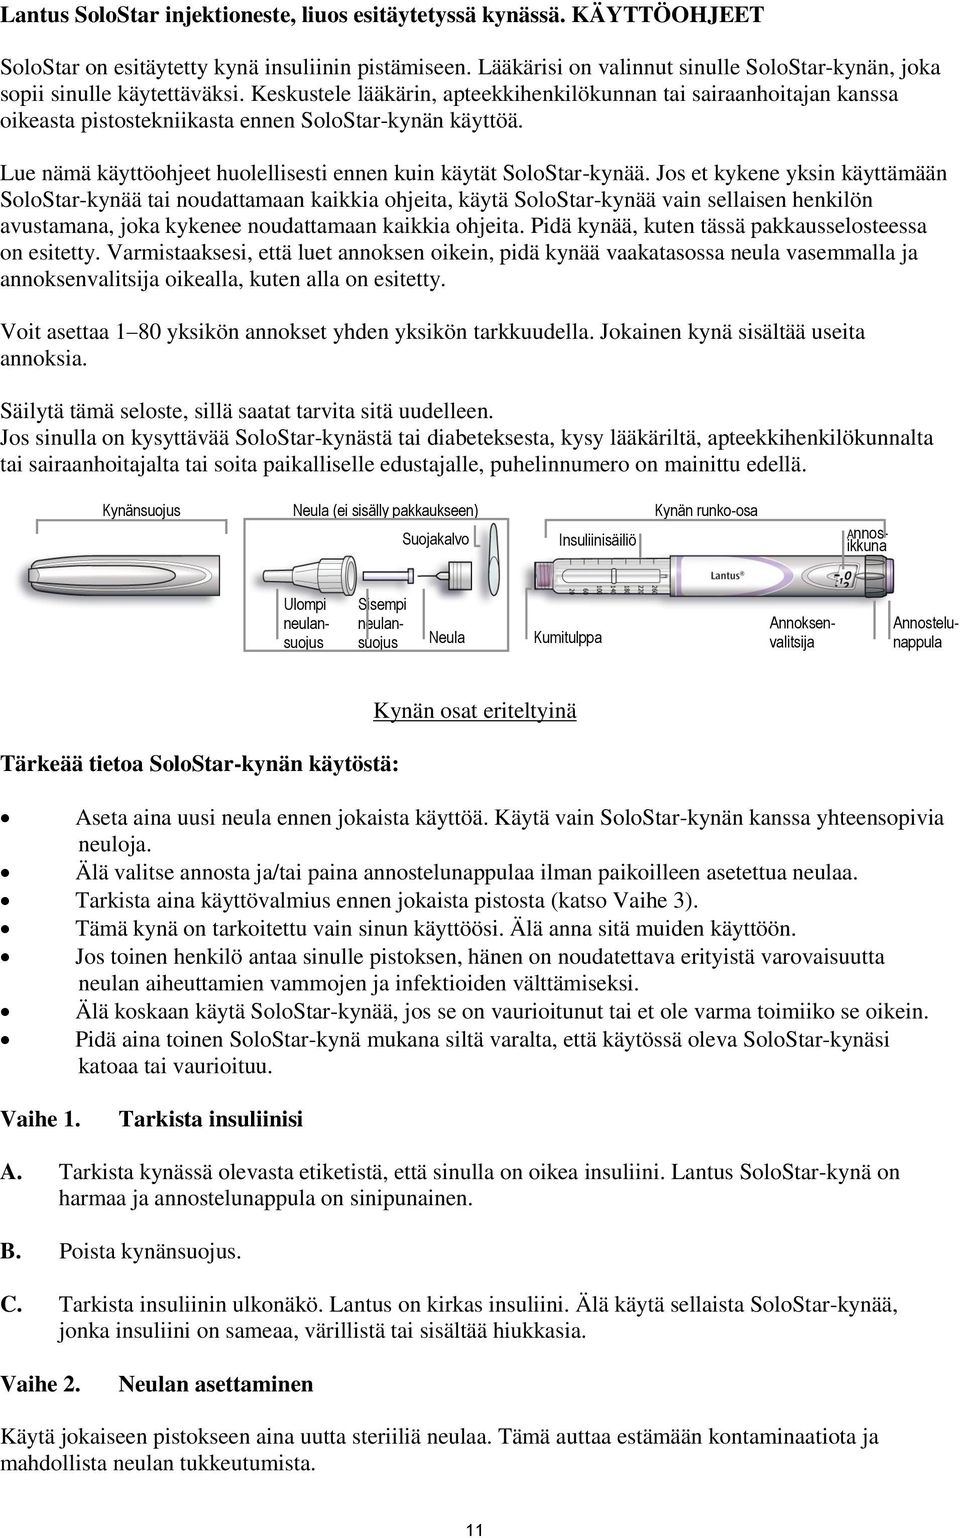 Pakkausseloste: Tietoa käyttäjälle. Lantus SoloStar 100 yksikköä/ml  injektioneste, liuos esitäytetyssä kynässä glargininsuliini - PDF Ilmainen  lataus